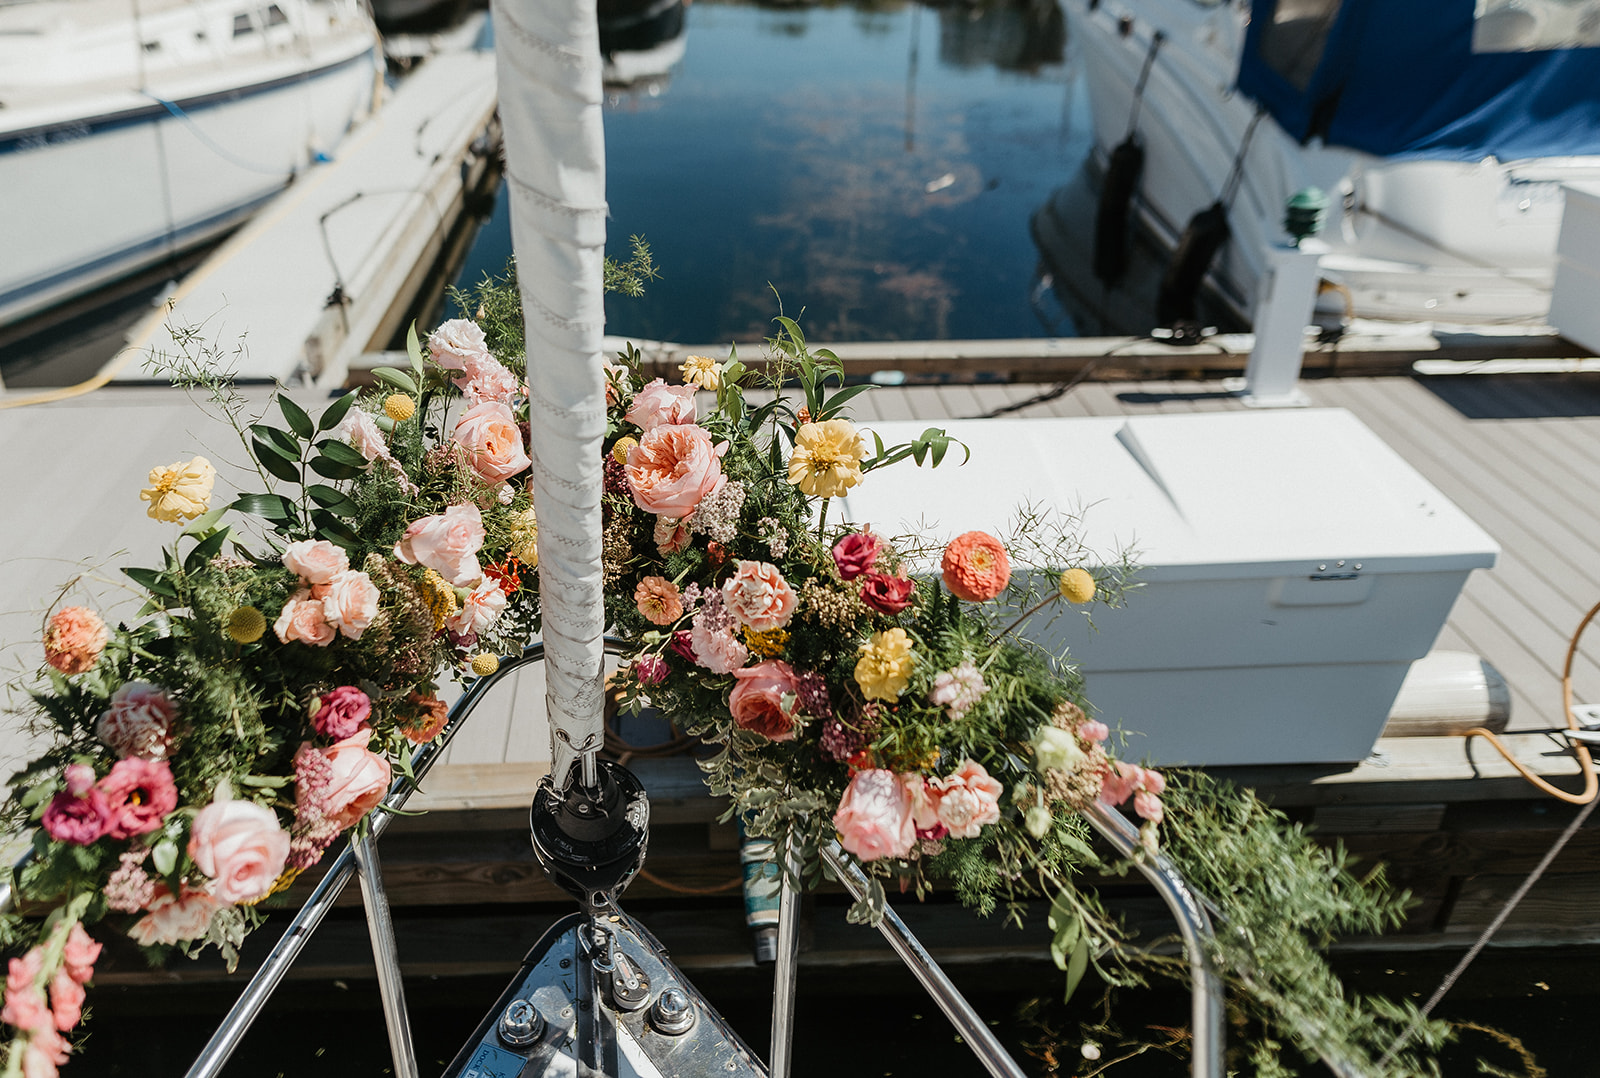 kelowna-sailboat-elopement-fleuRich-creations-wedding-flowers